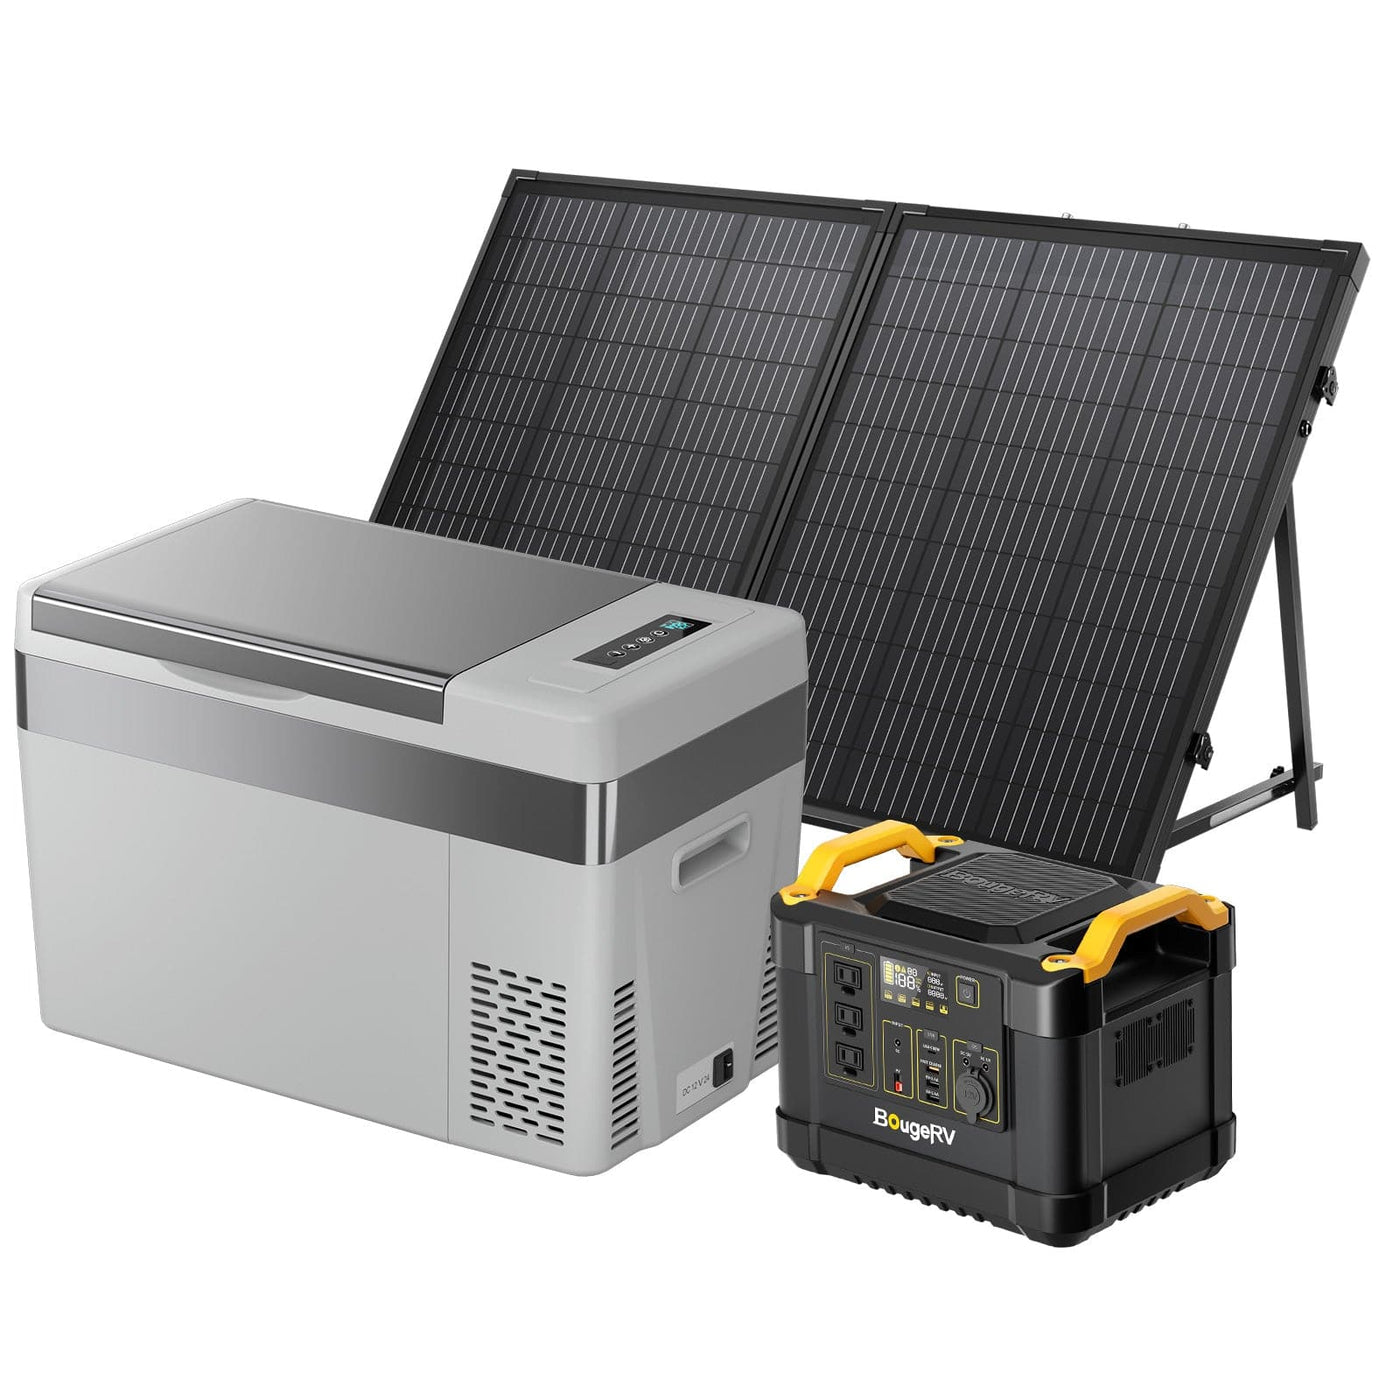 130W Starter Solar Kit For Outdoor Travel